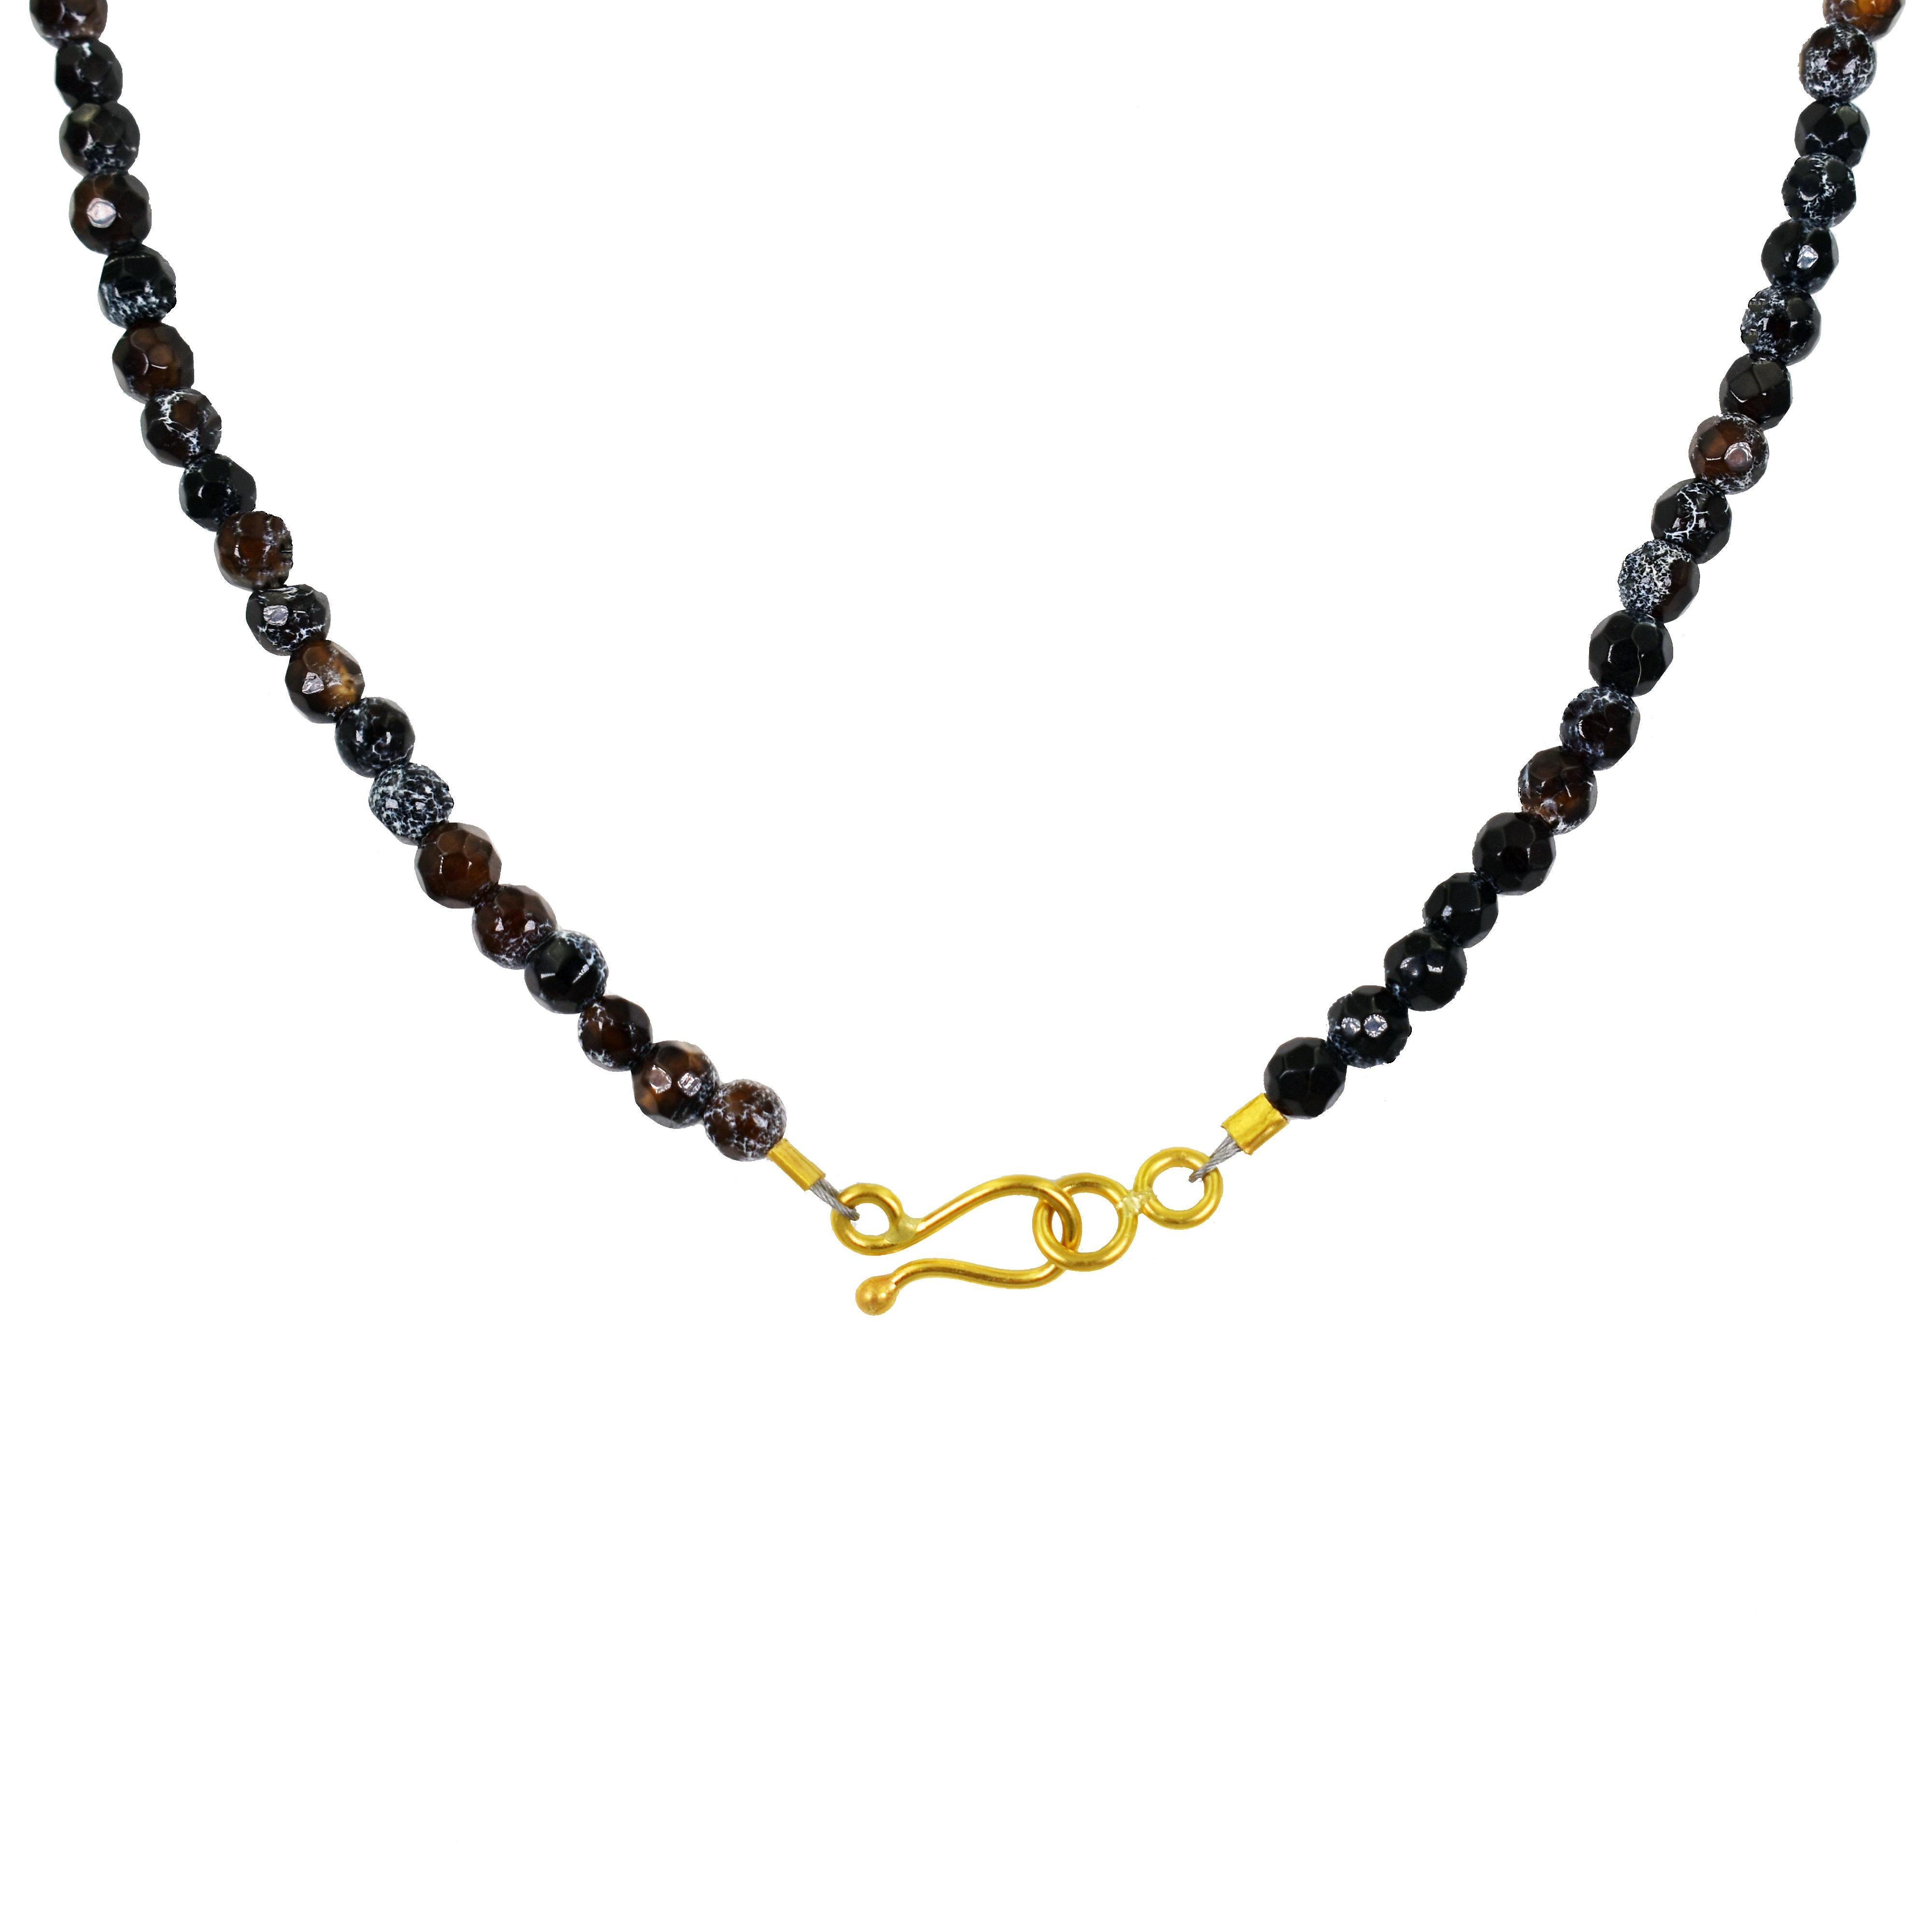 Authentique clé romaine antique en bronze et pendentif en or jaune 22k sur un collier de perles en agate de feu à facettes. Le collier de perles mesure 15,75 pouces de long. La longueur totale du pendentif est de 1,69 pouces. Le collier est terminé